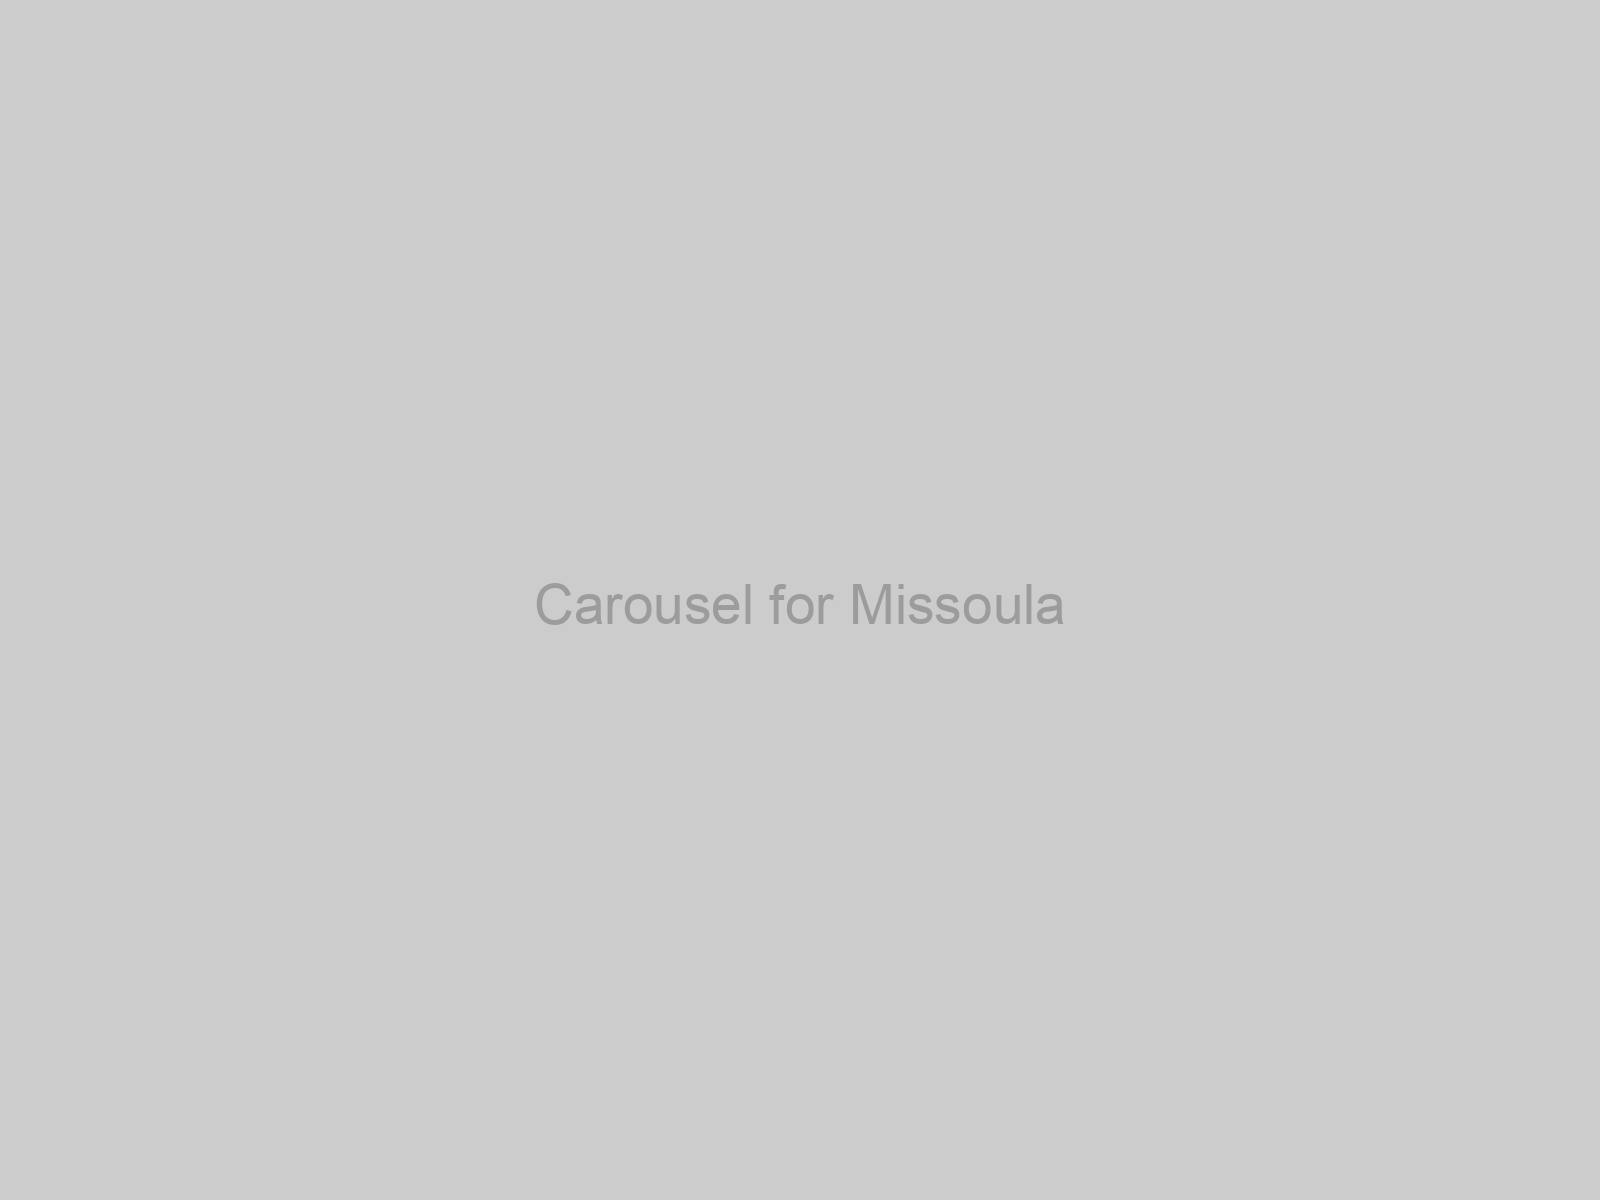 Carousel for Missoula